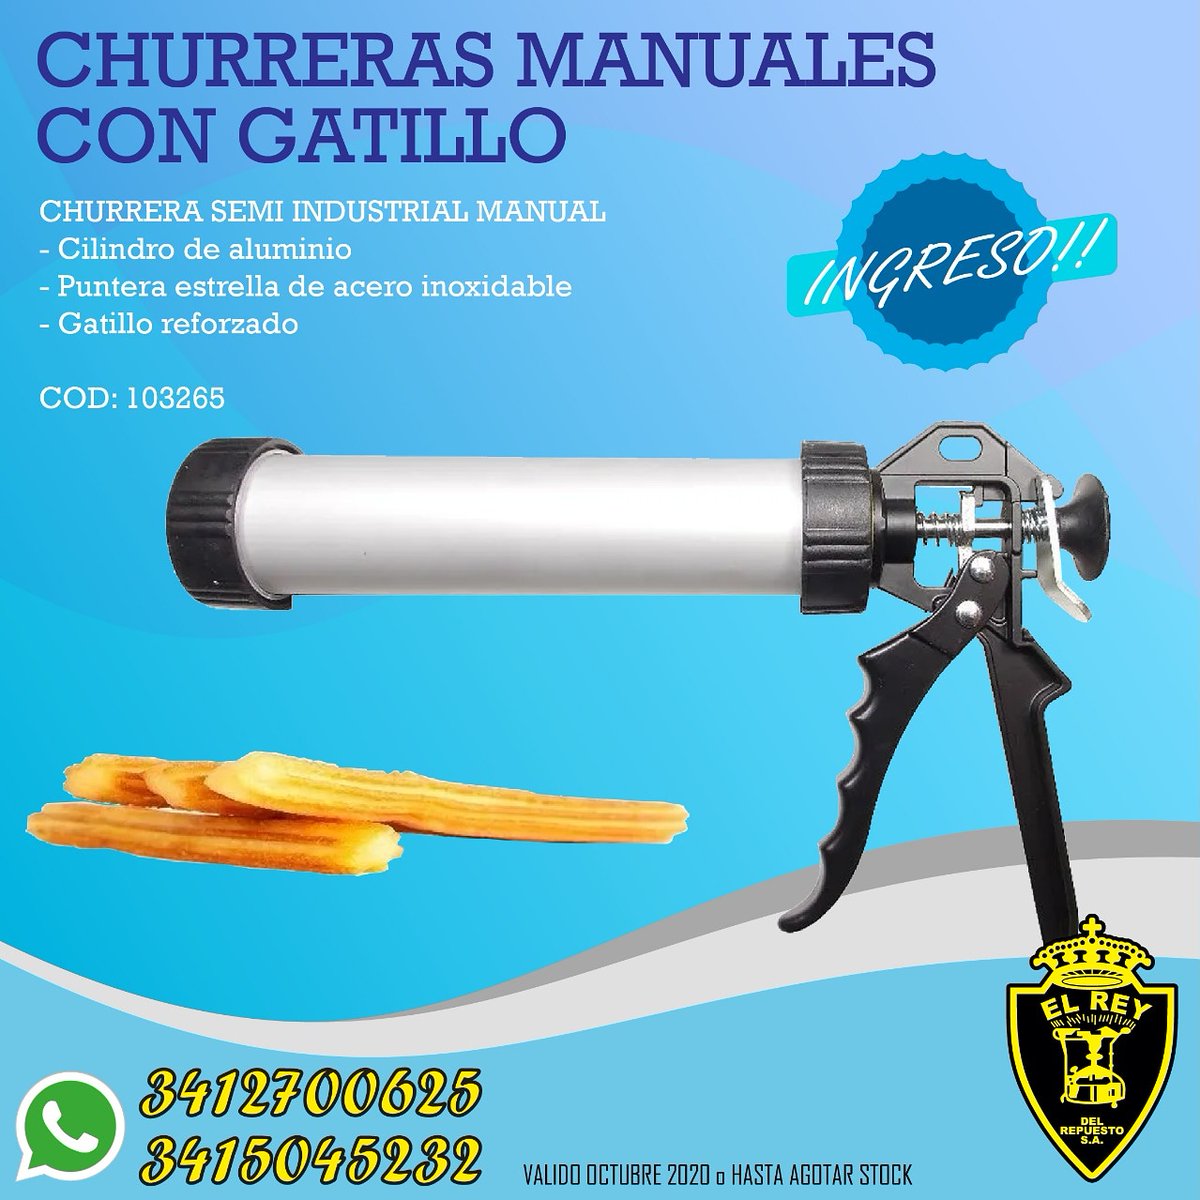 El Rey Del Repuesto on X: Churrera Manual con Gatillo!!! #Churrera #Manual  #Gatillo #Churros #ElReyDelRepuesto #Rosario #StaFe #covid_19   / X